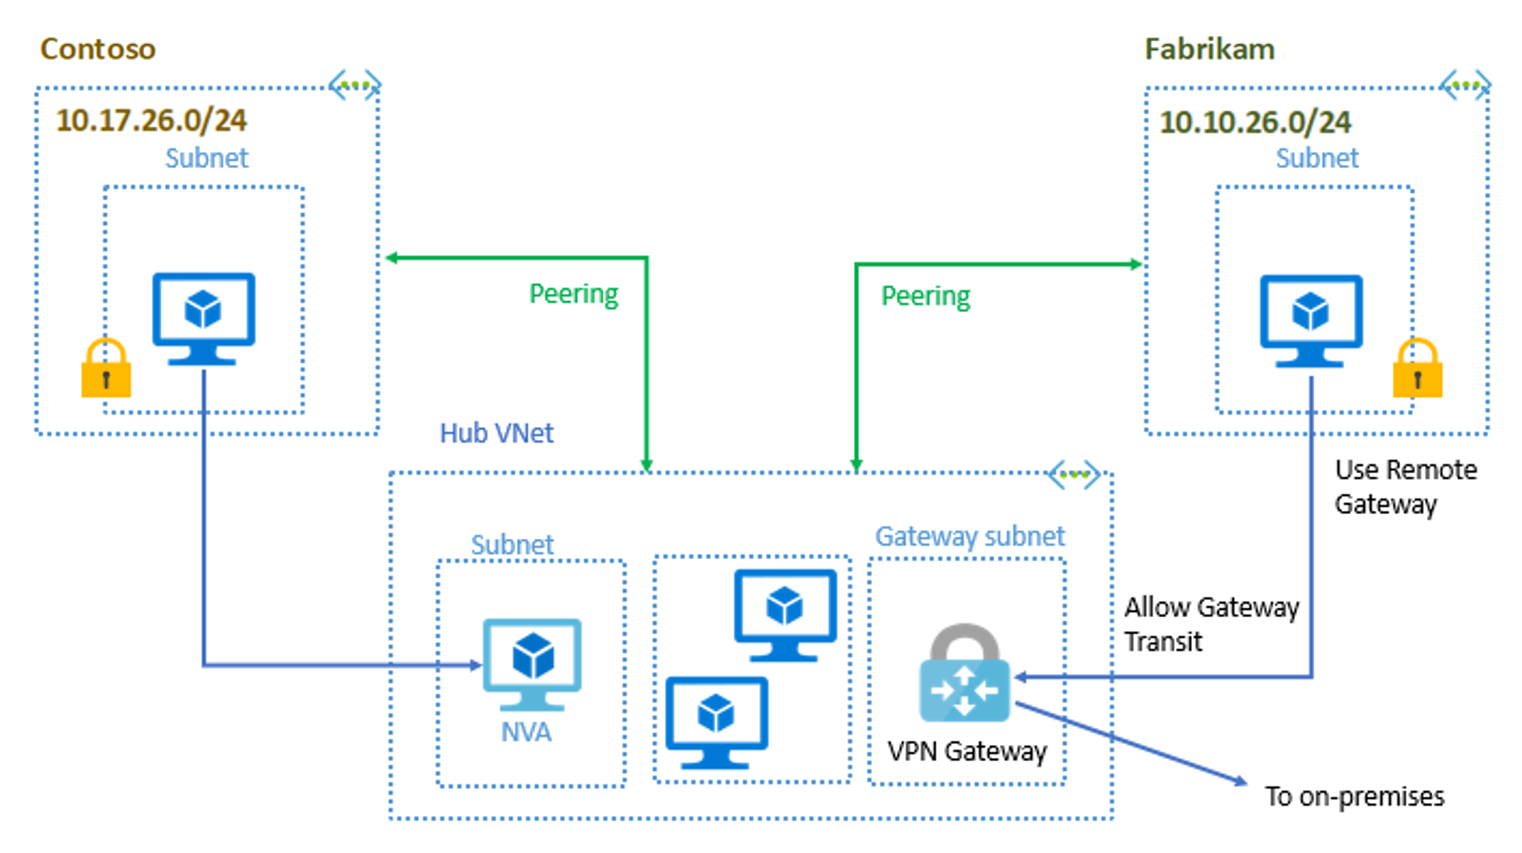 Konfigurace hvězdicového centra – Contoso a Fabrikam peer to Hub VNet. Virtuální síť centra obsahuje síťové virtuální zařízení, virtuální počítače a bránu VPN Gateway připojenou k místní síti.